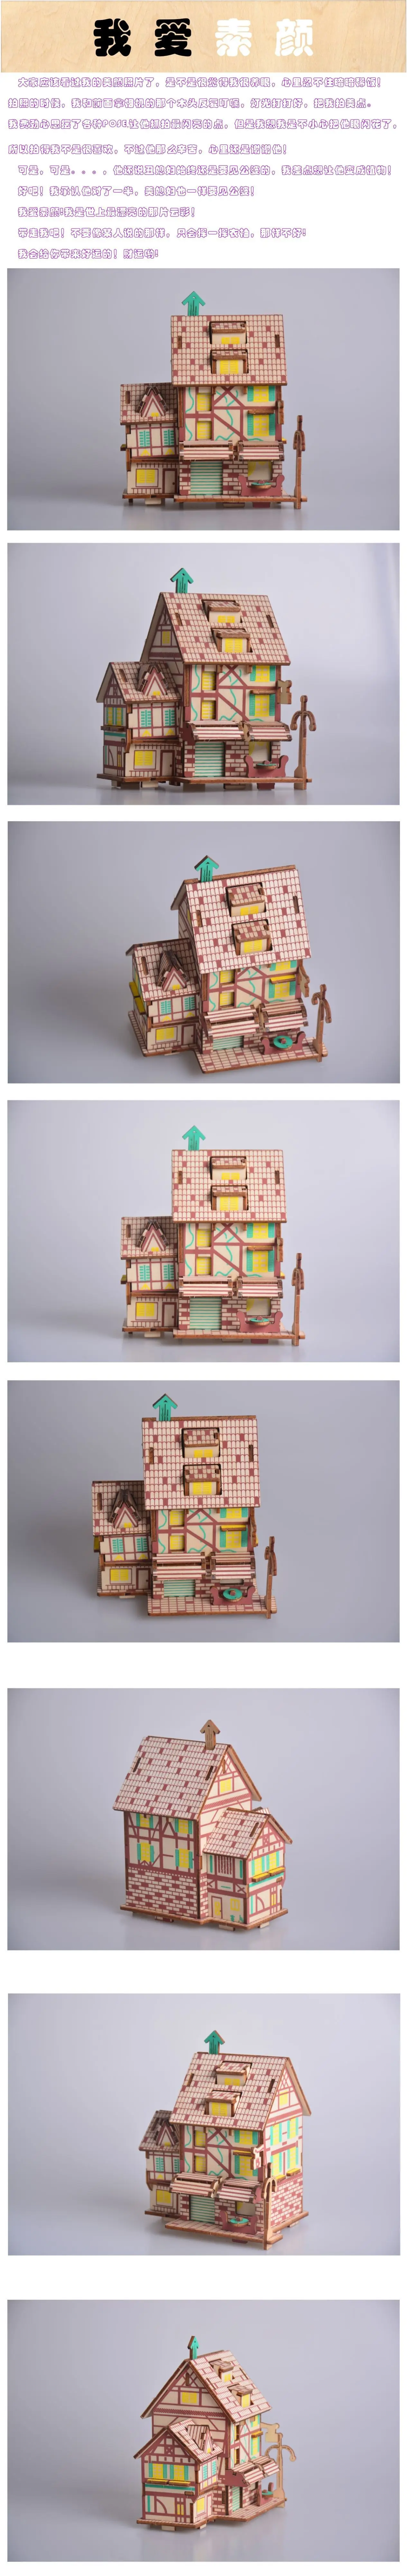 Синь Lian Осенние Пейзажи безграничная деревянная трехмерный зигзаг материал для ручной работы сделай сам наука девушка игрушки